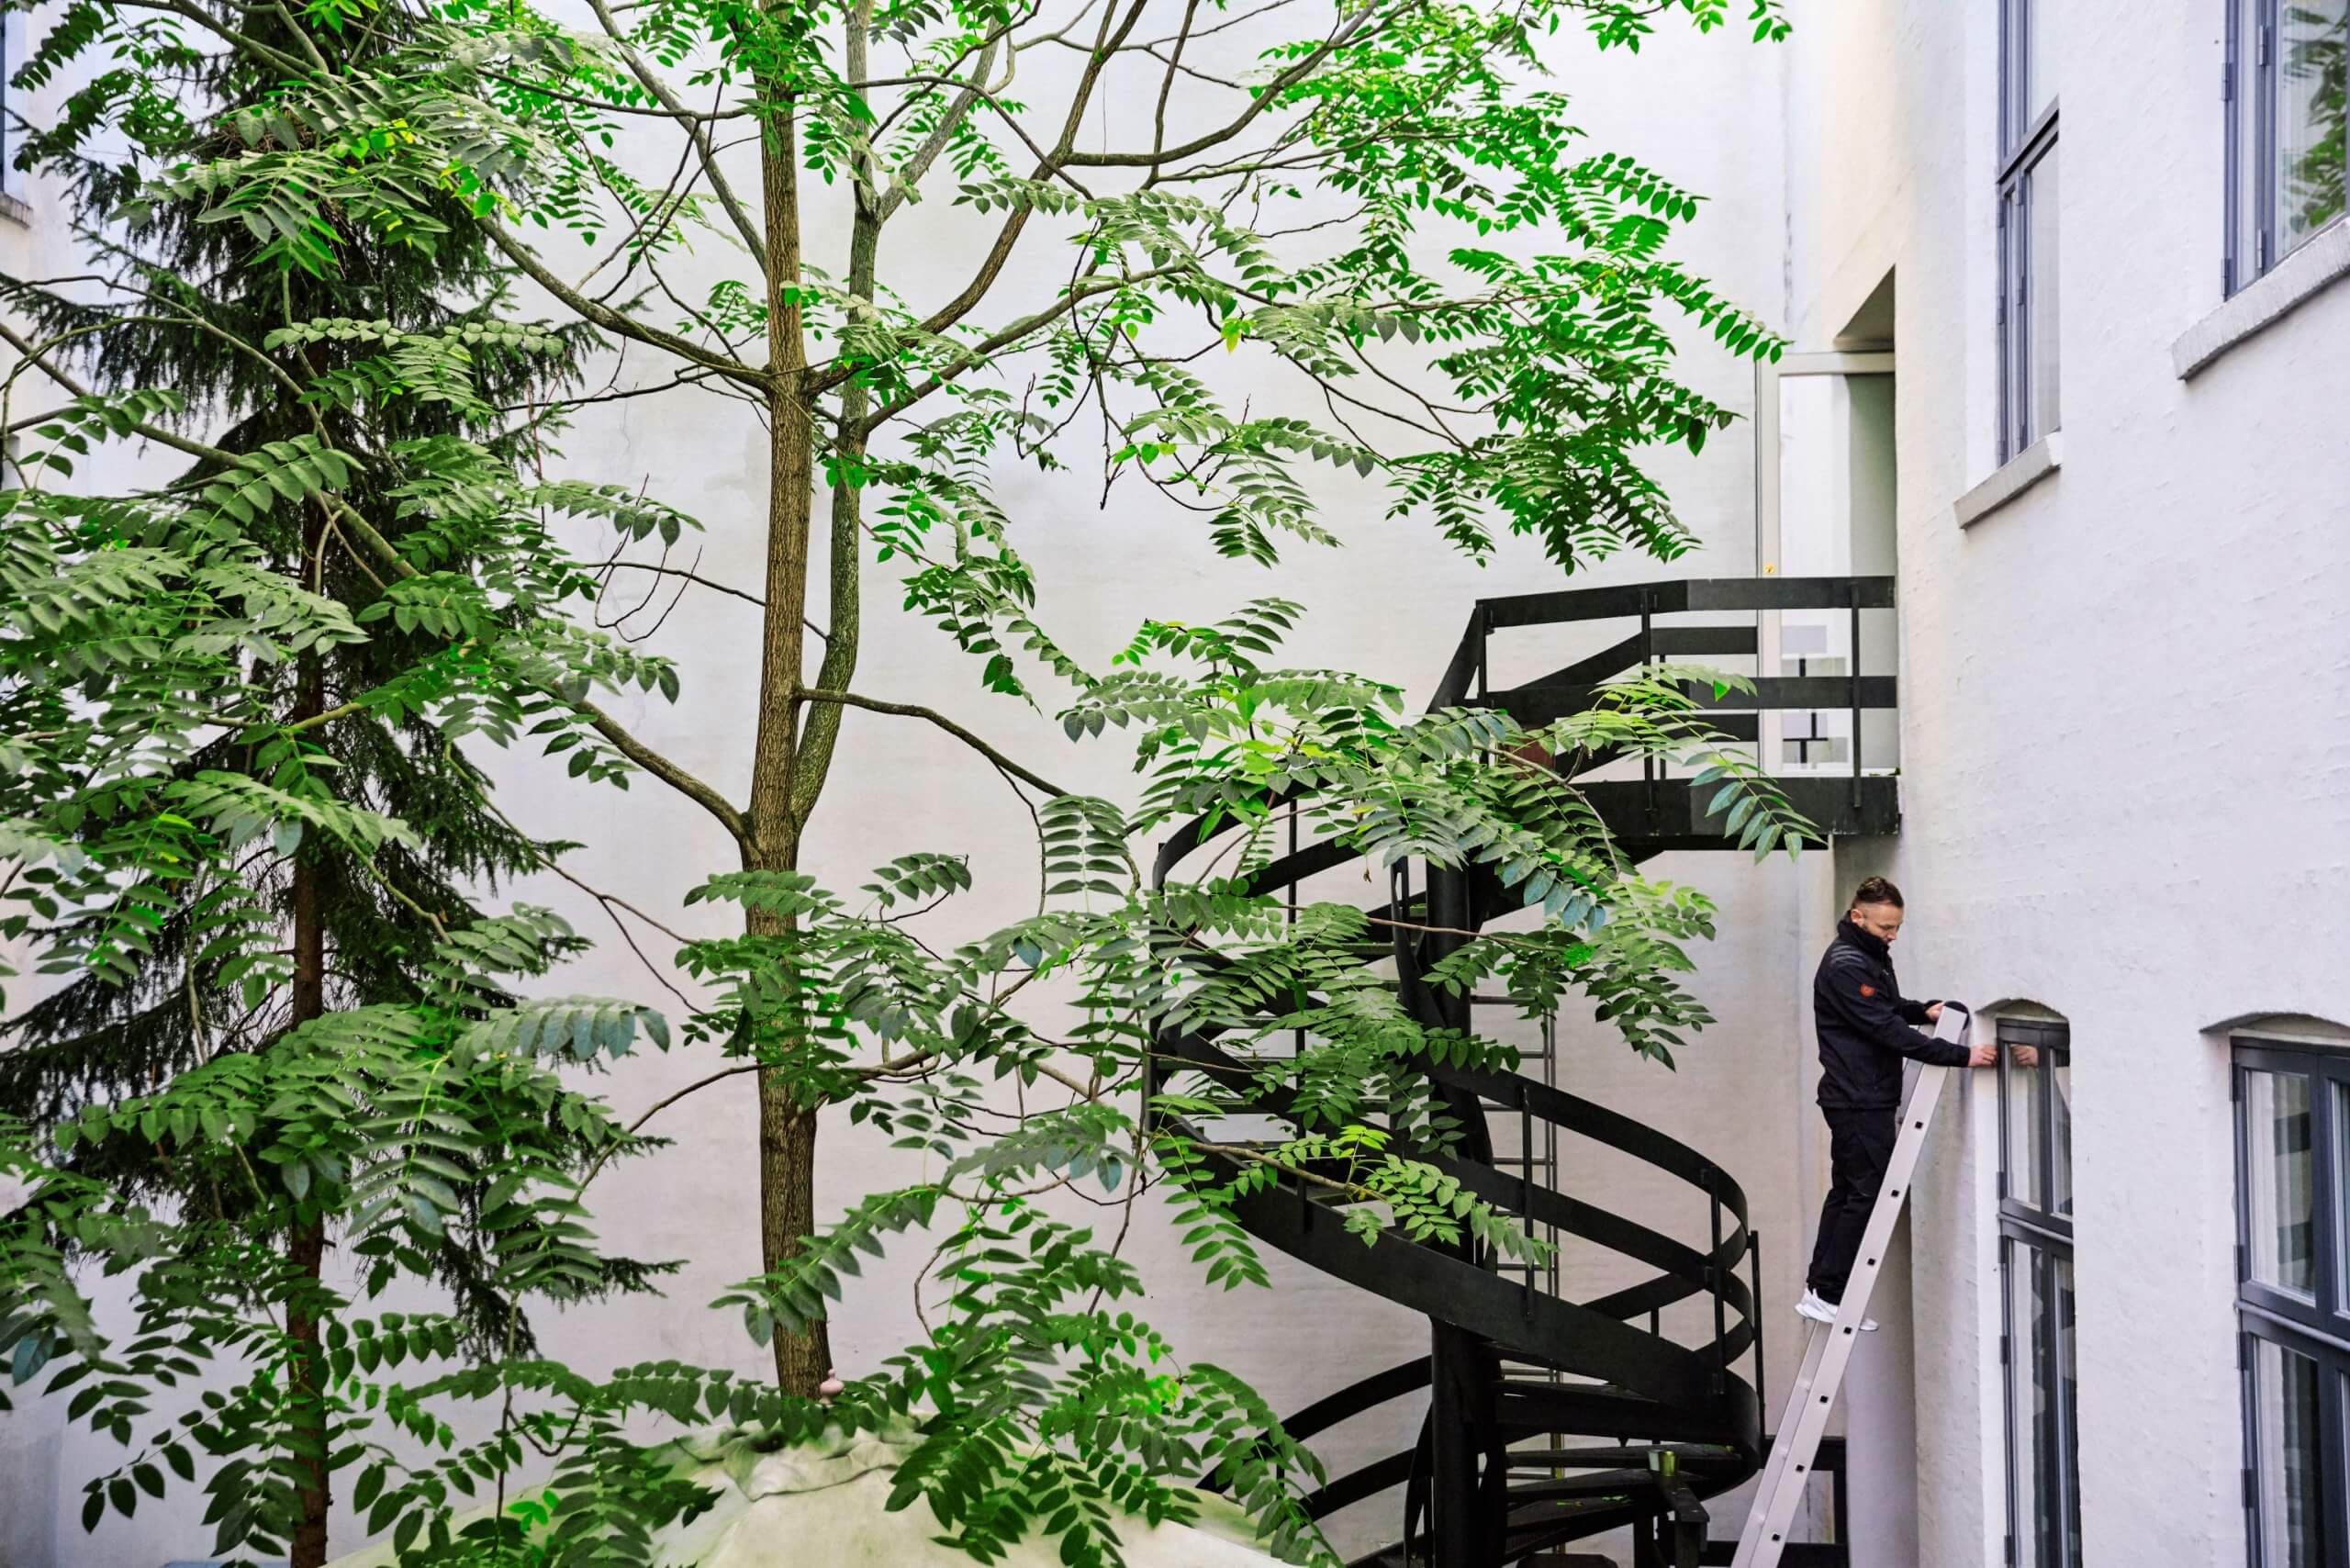 Billede af flot grønt træ og trappe op til bygning. Billedet viser grøn pleje services hos CC Facility.